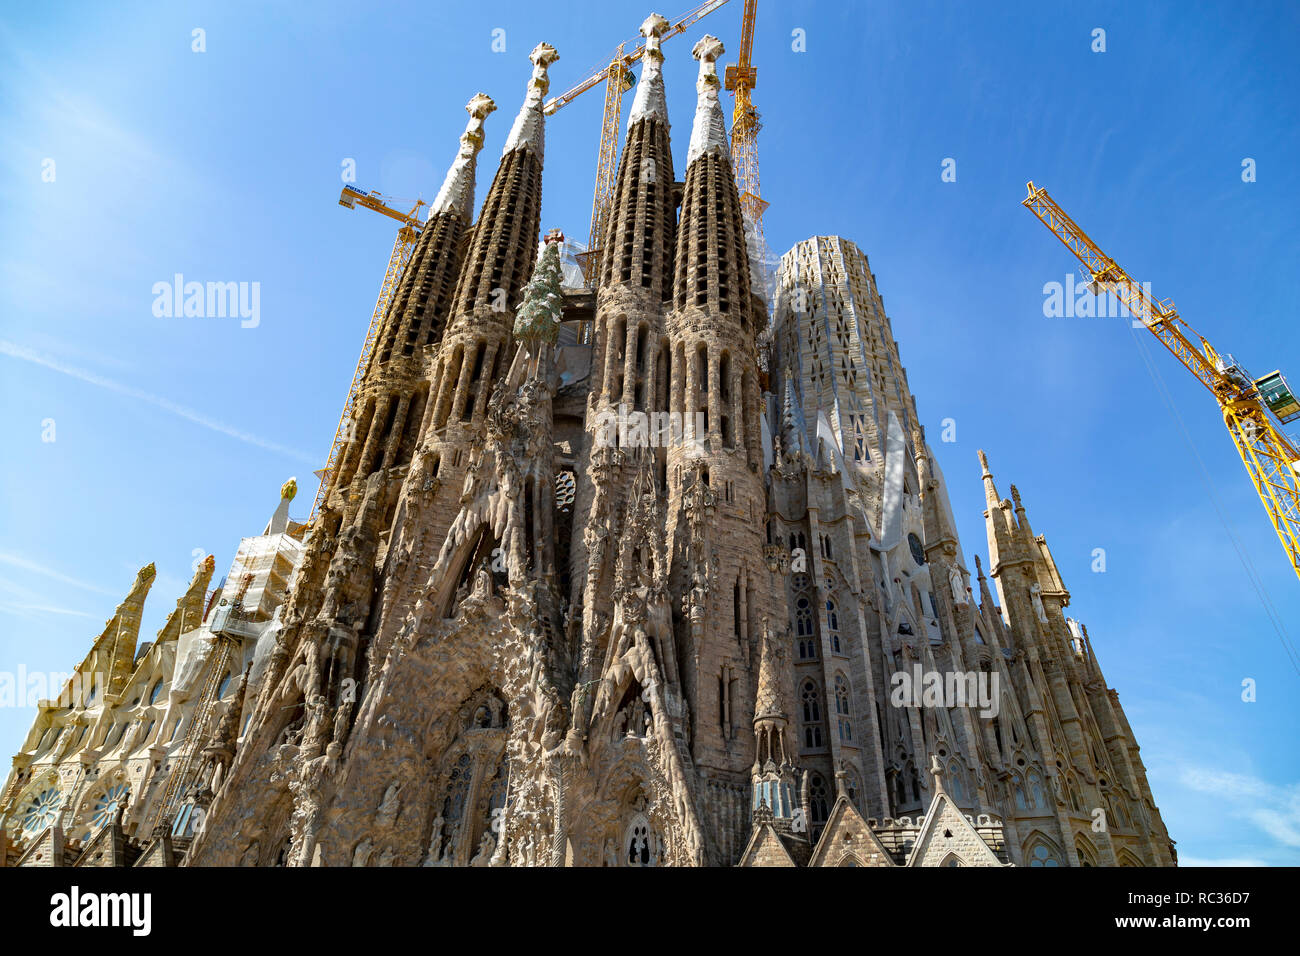 La iglesia de La Sagrada Familia vista frontal, diseñado por Antoni Gaudí, UNESCO, Barcelona, Cataluña (Catalunya), España Foto de stock